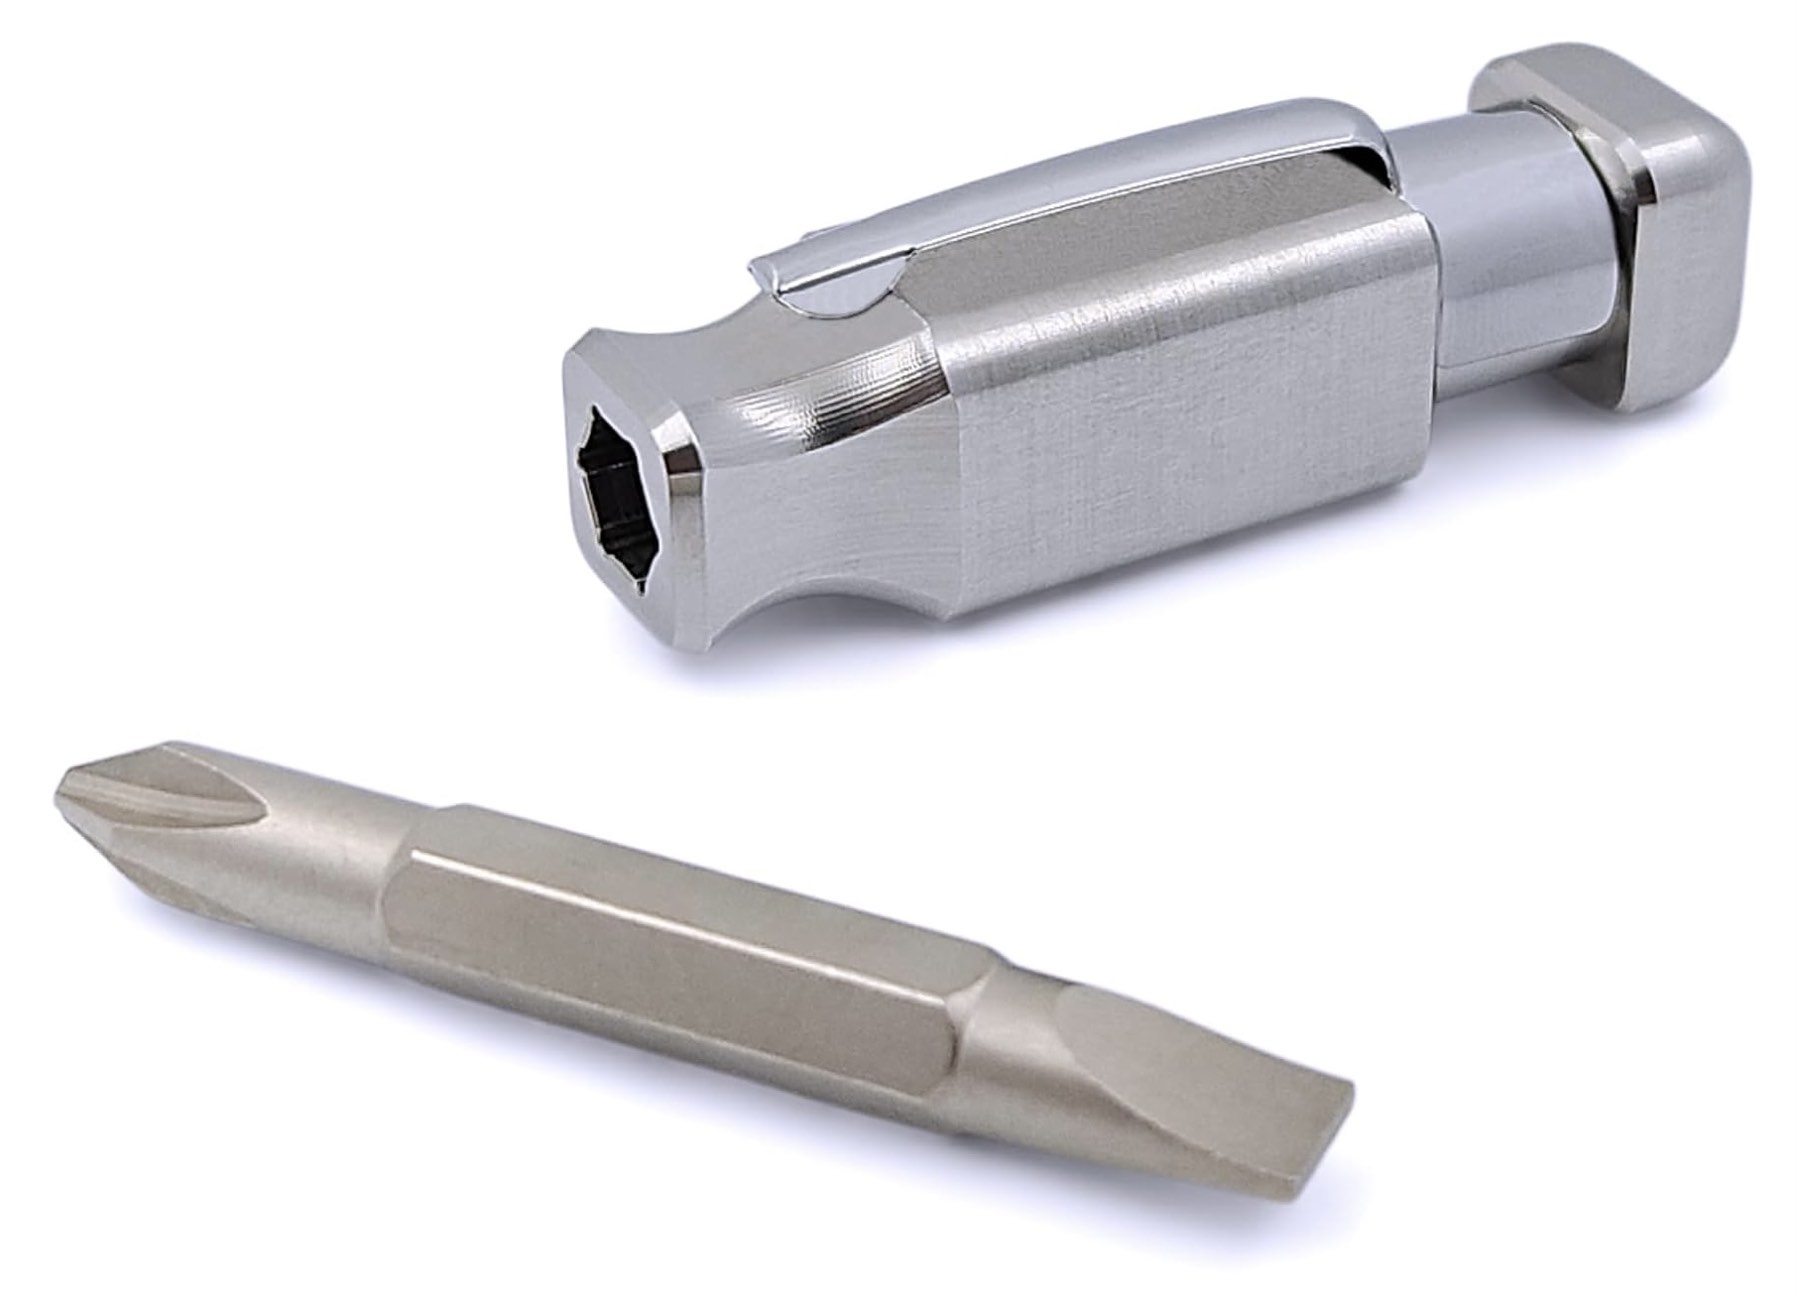 k20-tools-pocket-screwdriver-doubled-headed-bit